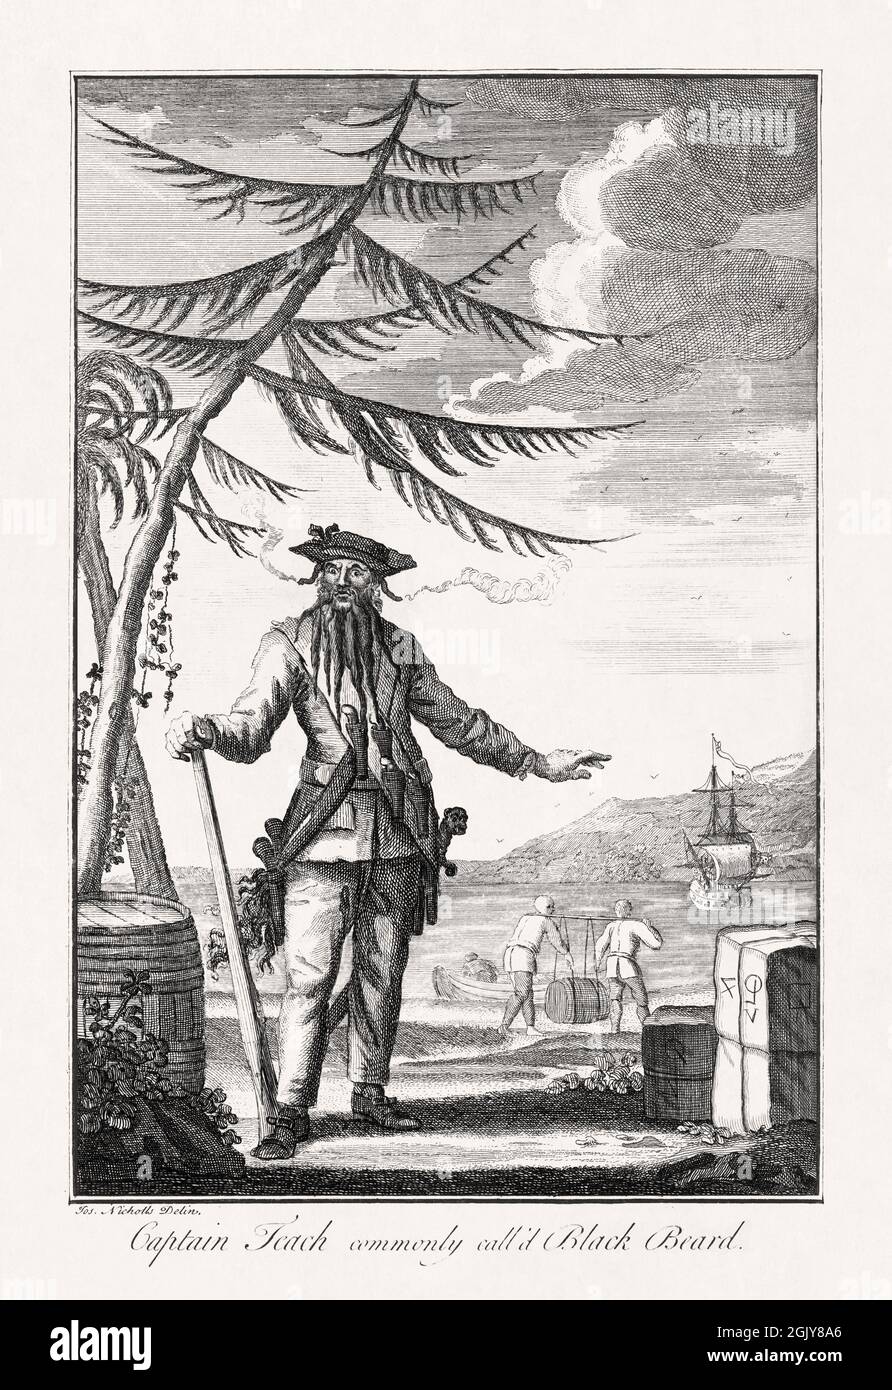 Ilustración del capitán Teach alias Black-Beard hecho en 1736 por Joseph Nicholls para ilustrar un libro sobre la piratería escrito por Daniel Defoe. Foto de stock